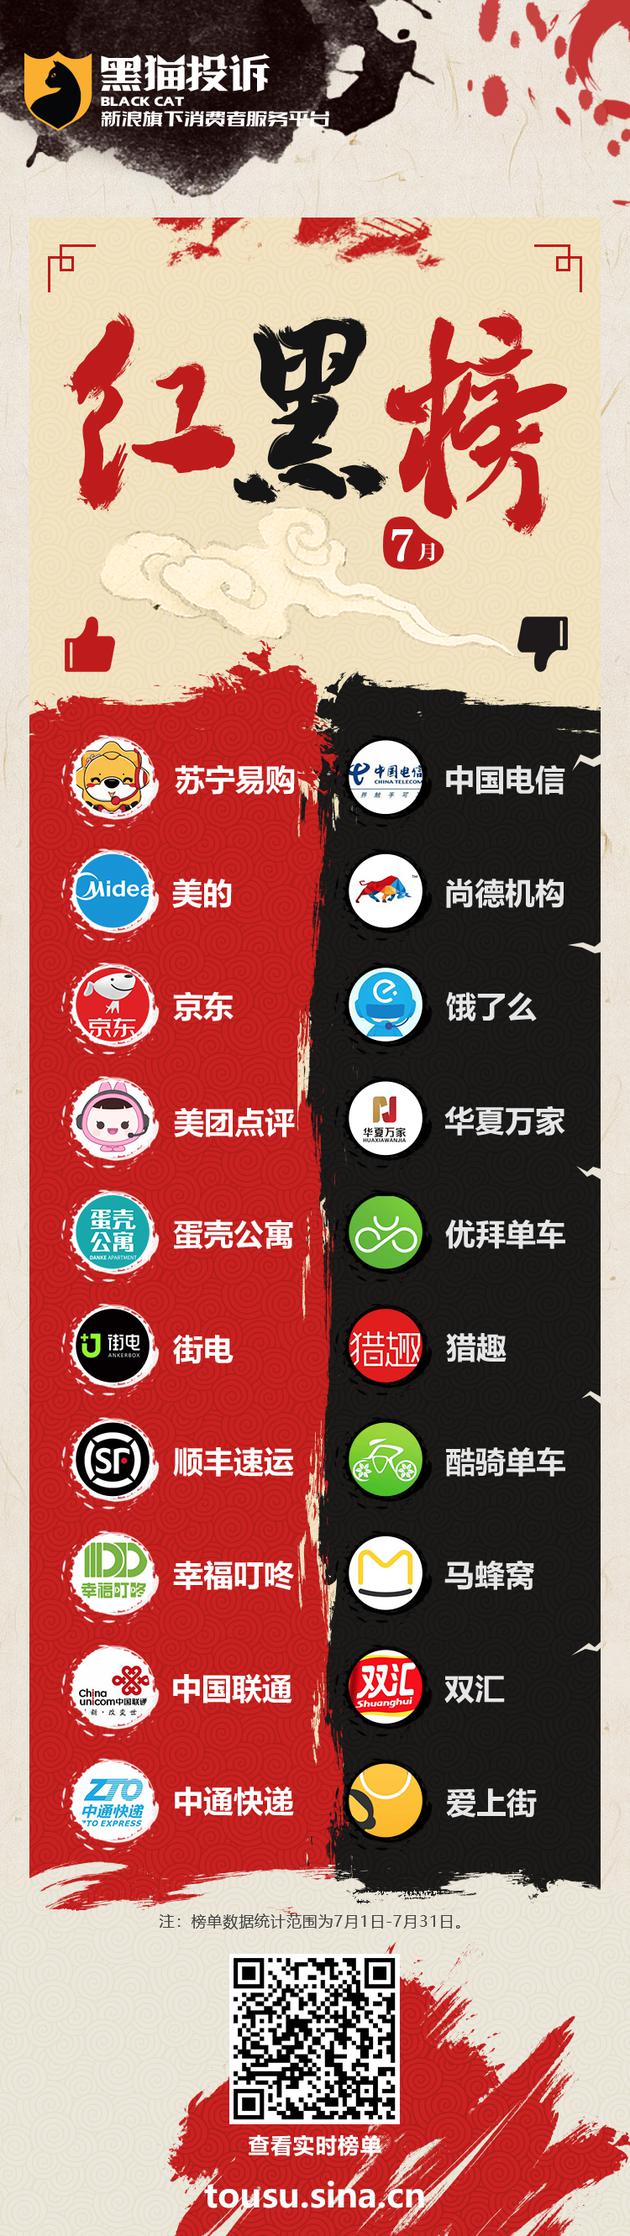 黑猫投诉企业7月红黑榜：中国电信连续两月黑榜第一